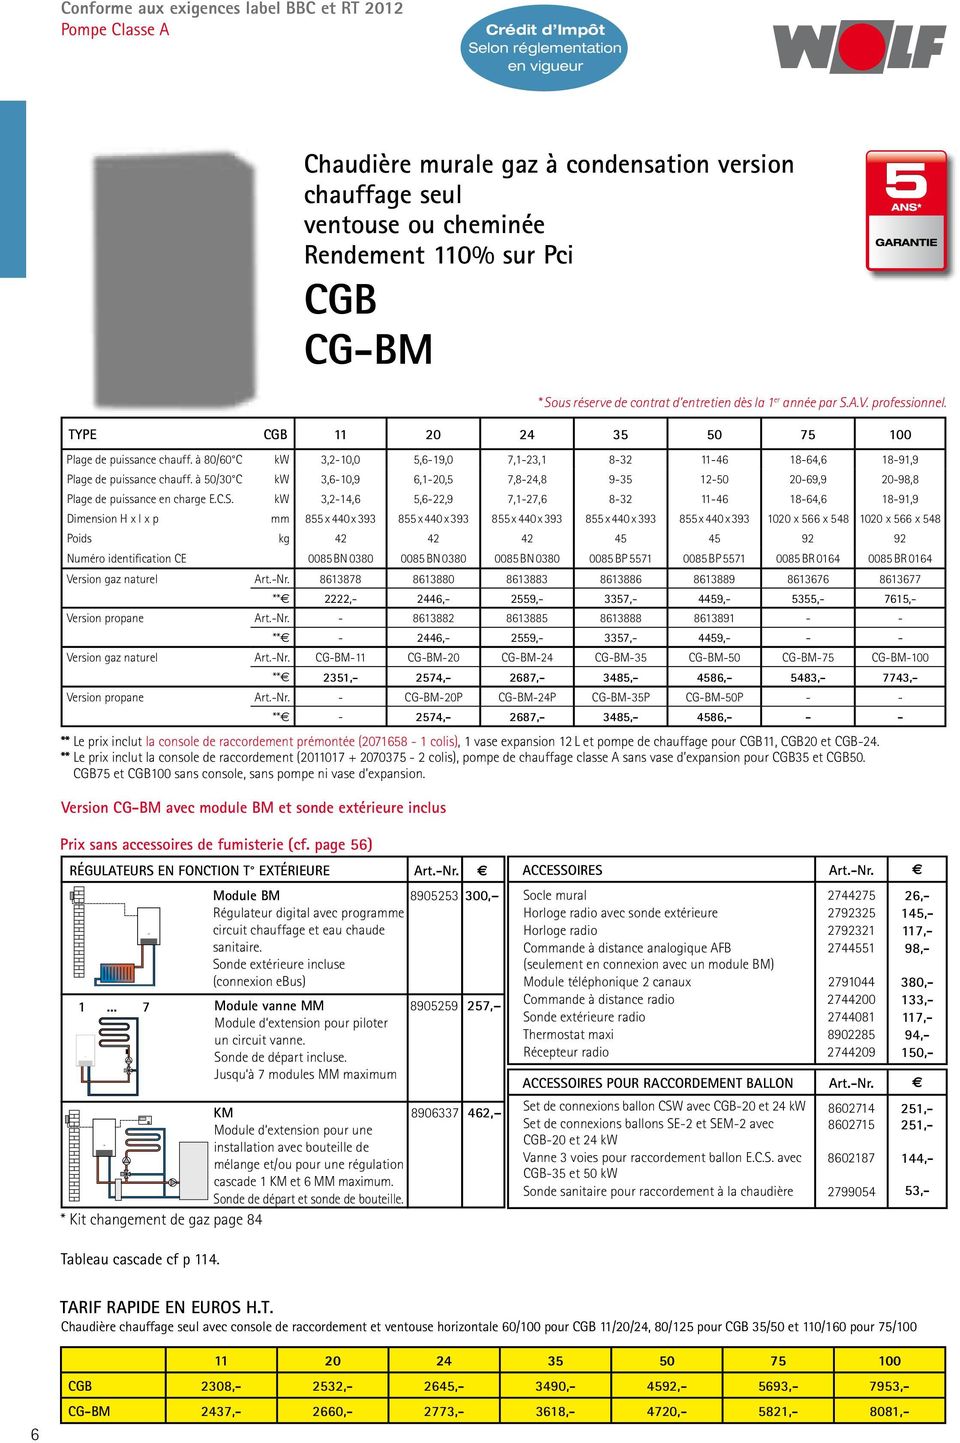 YE CGB 11 0 4 5 50 75 100 lage de puissance chauff. à 80/60 C kw,-10,0 5,6-19,0 7,1-,1 8-11-46 18-64,6 18-91,9 lage de puissance chauff.